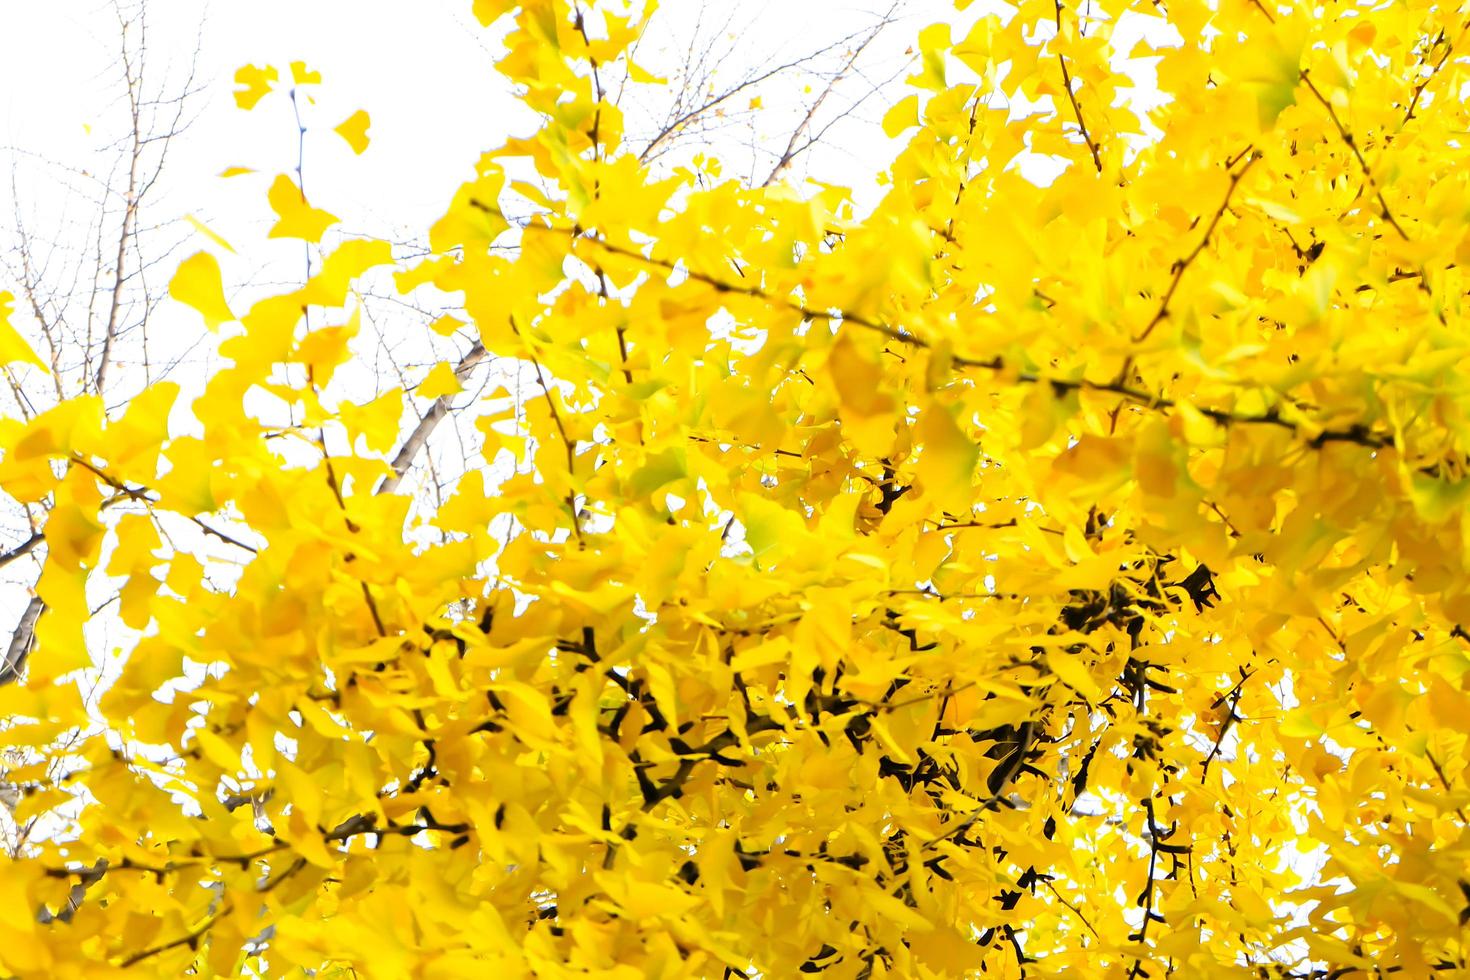 árbol de hojas de ginkgo biloba amarillo en otoño foto